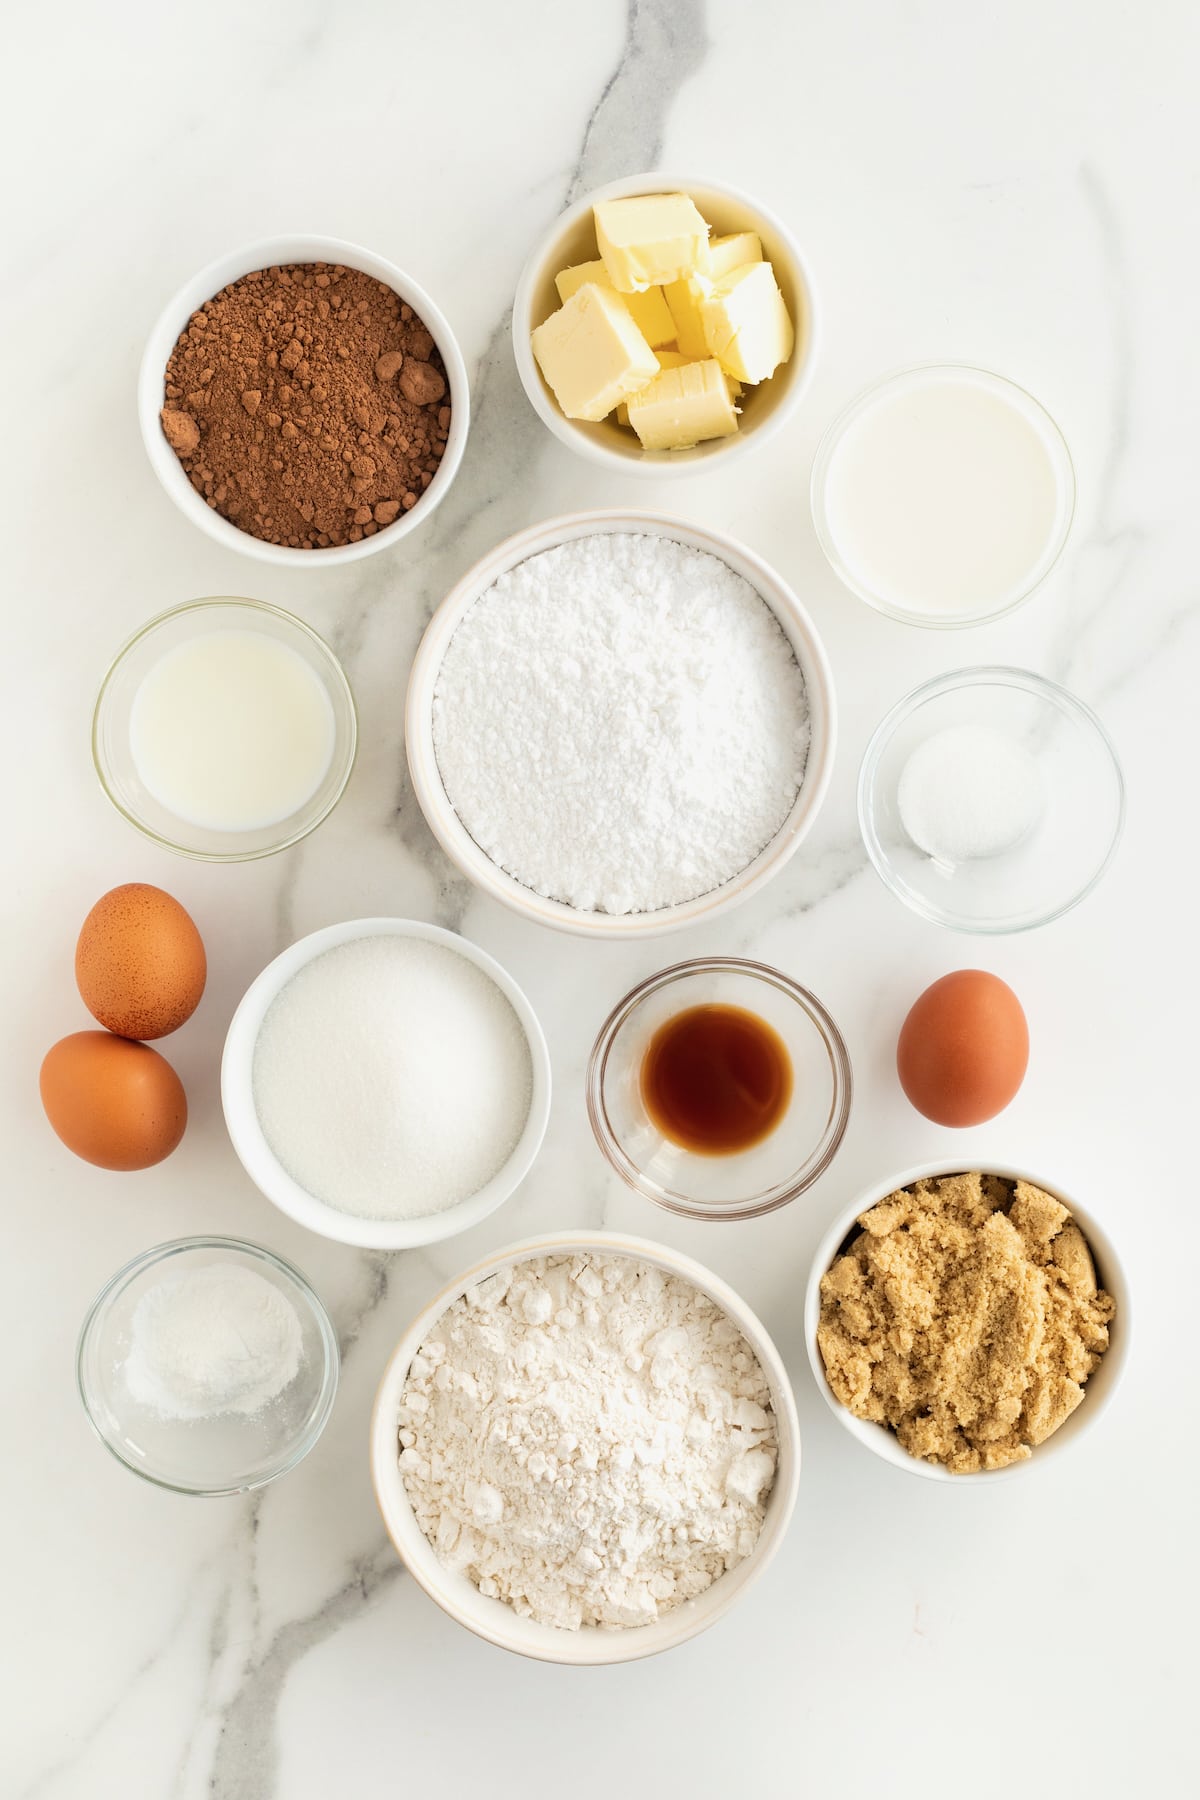 Ingredients to make chocolate sugar cookies.